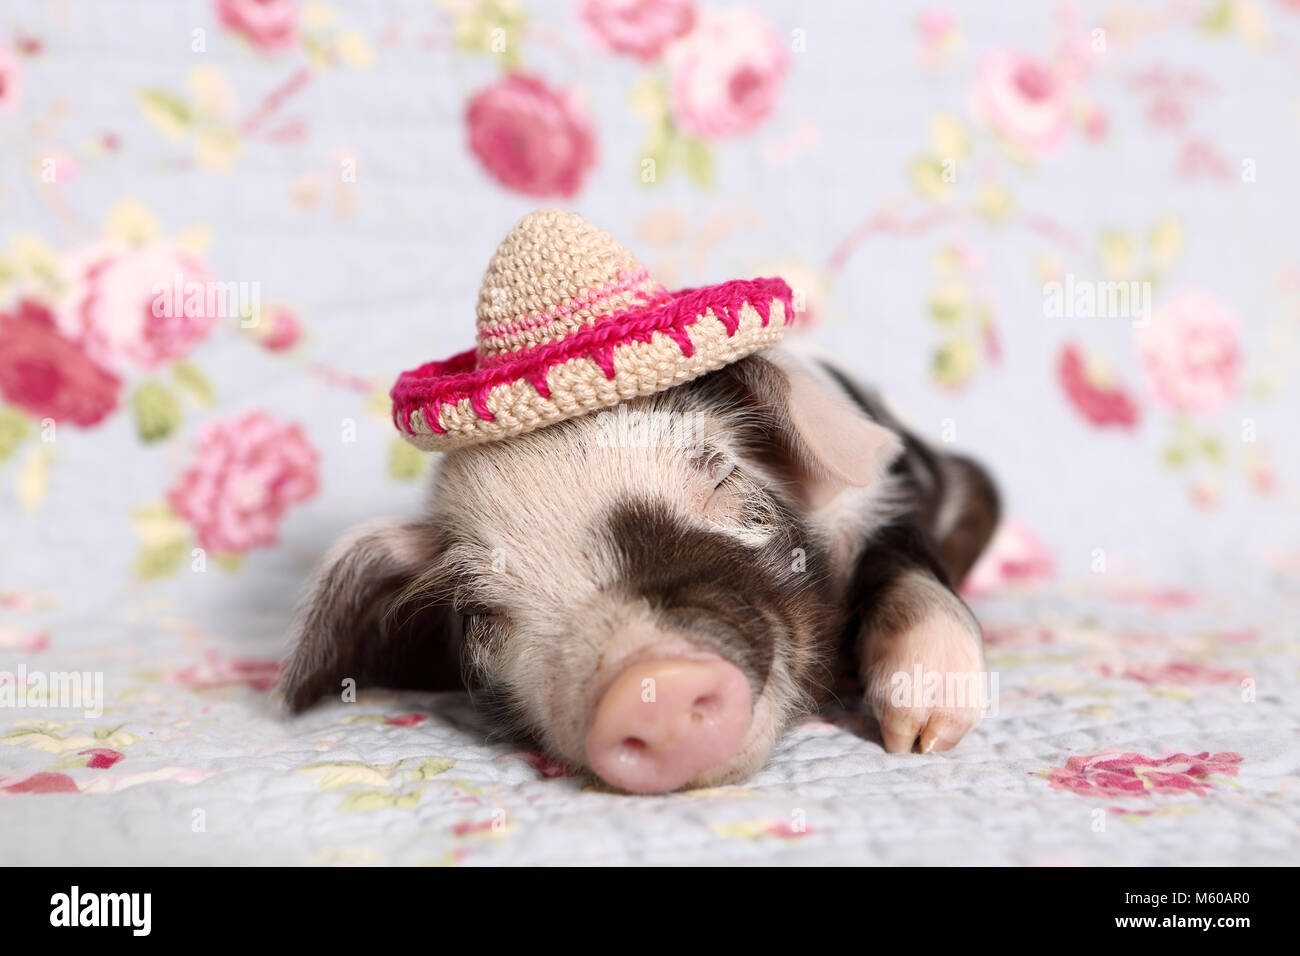 Hausschwein, Turopolje x?. Ferkel (1 Woche alt) das Tragen eines Gestricken sombrero, schlafen. Studio Bild vor einem blauen Hintergrund mit Rose Blume drucken. Deutschland Stockfoto